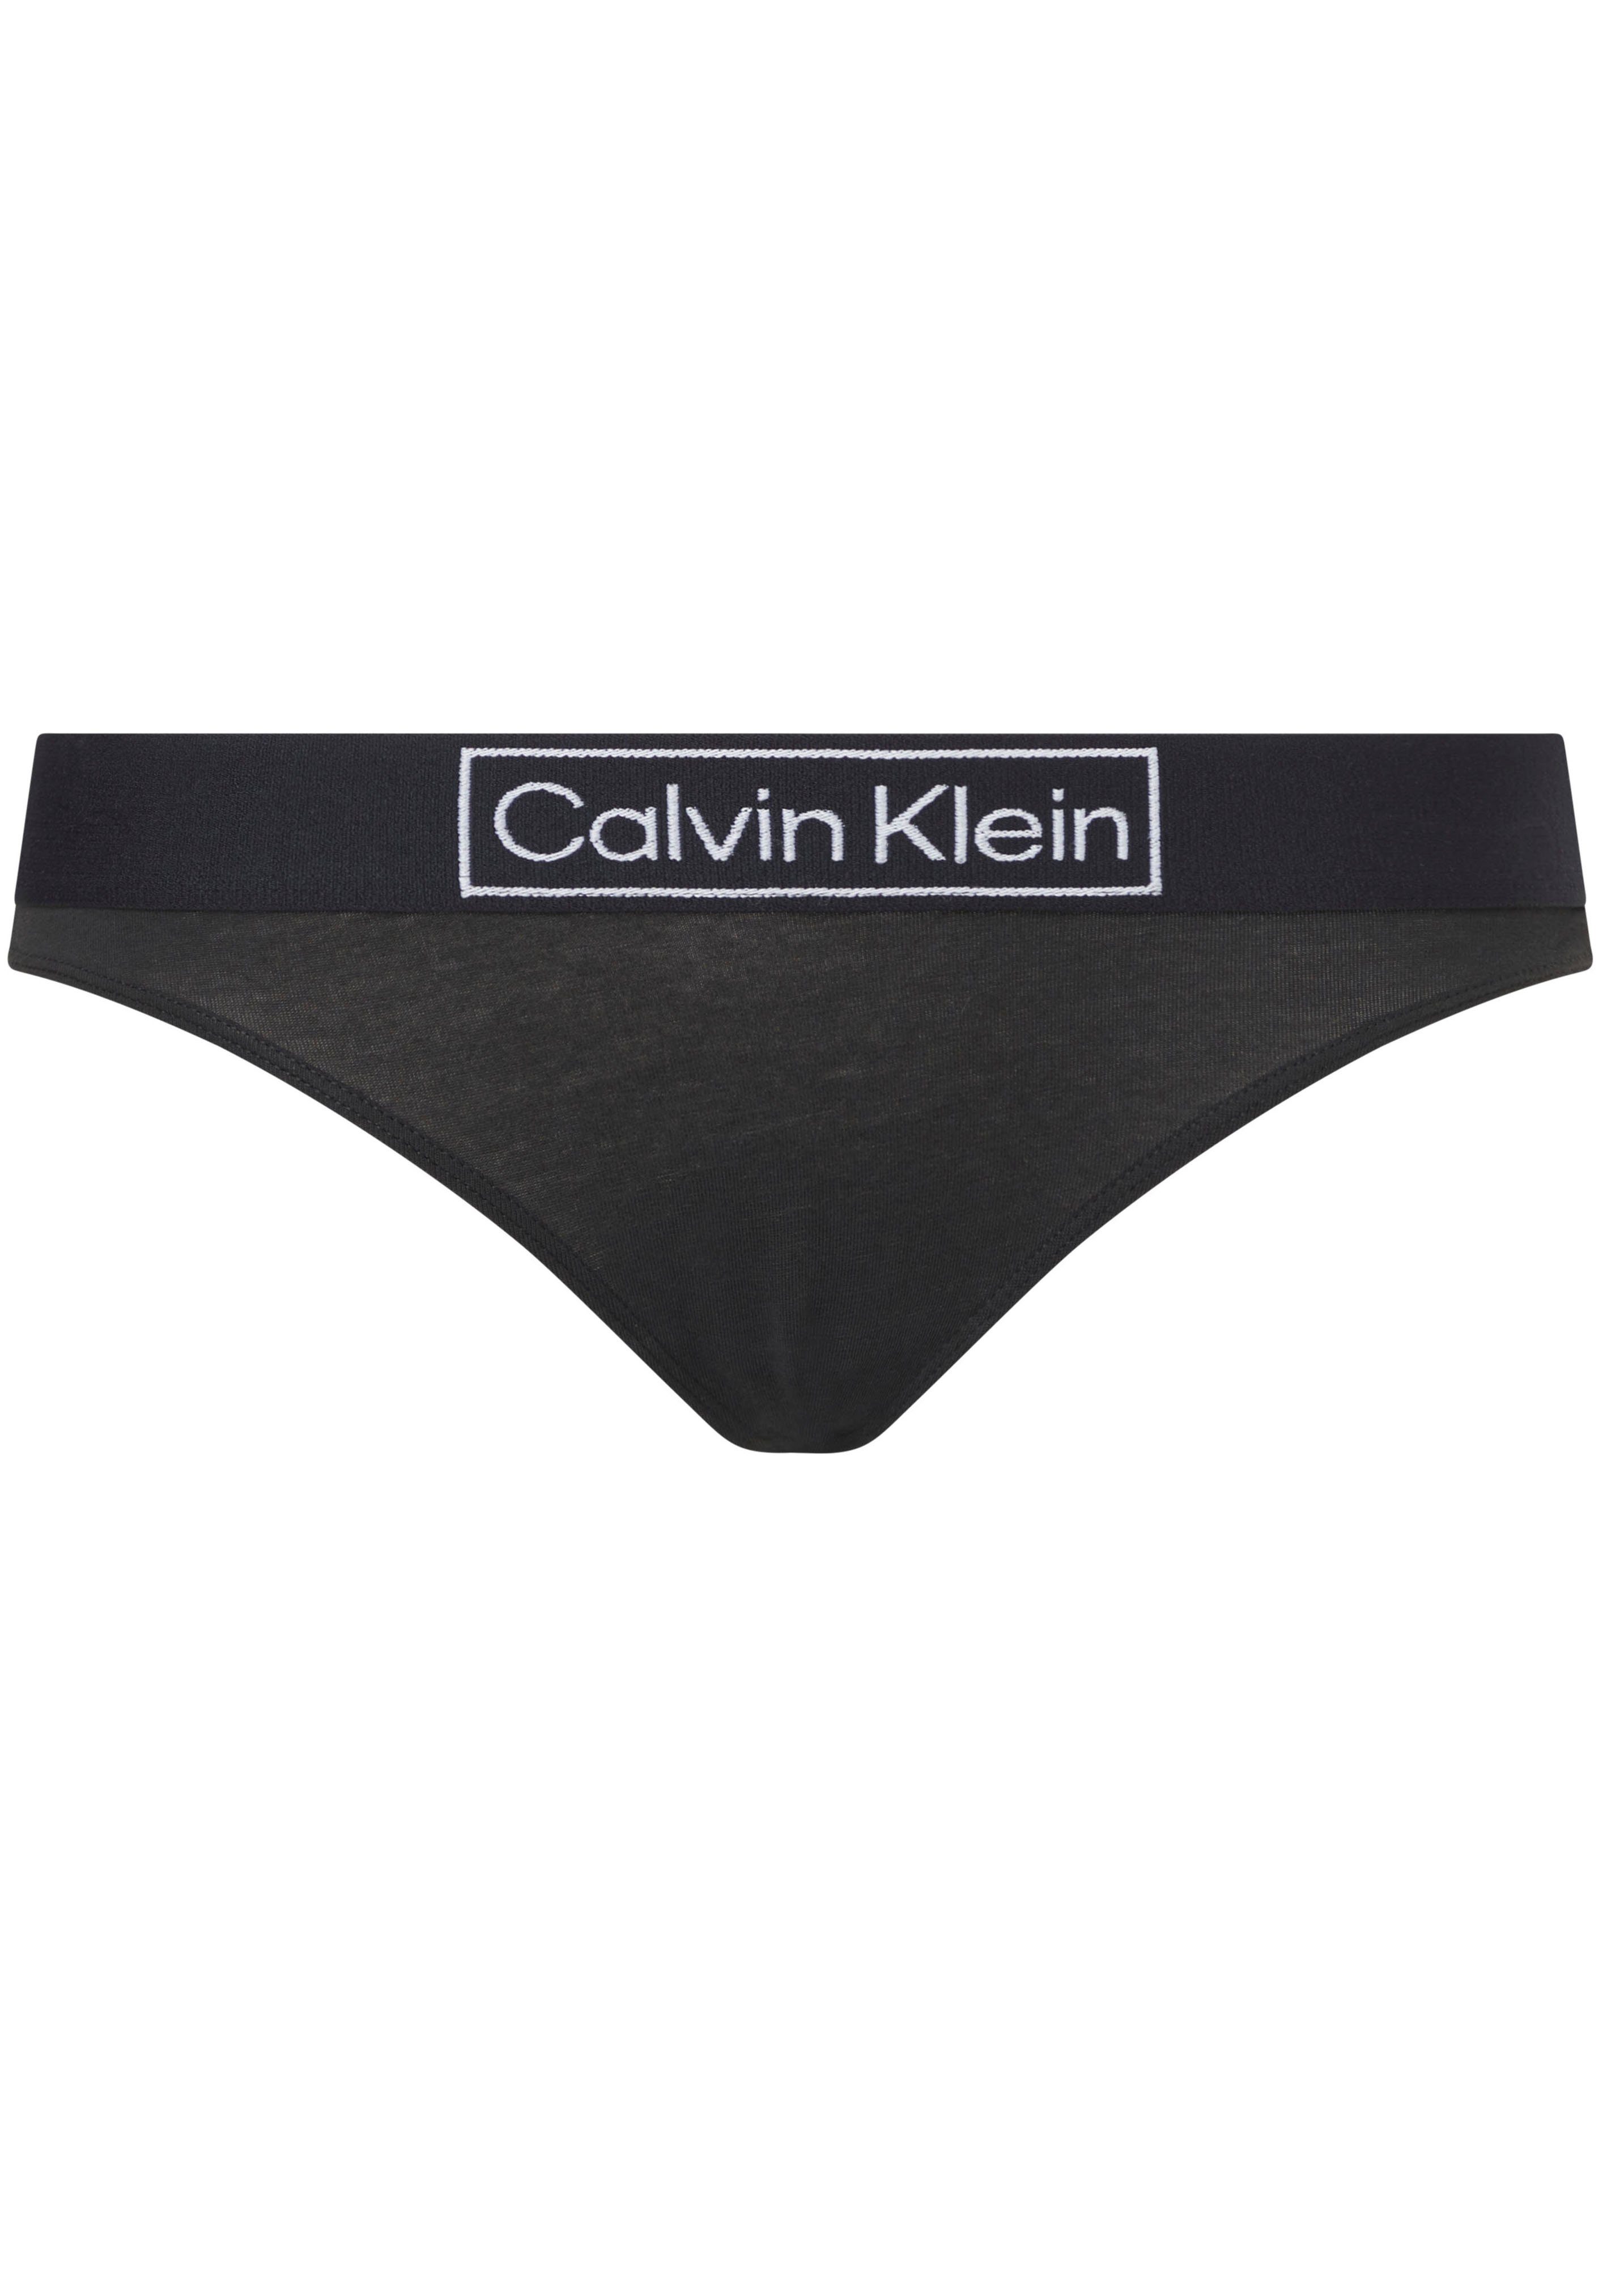 Calvin Klein Strings » Calvin Klein UNDERWEAR online kaufen | OTTO